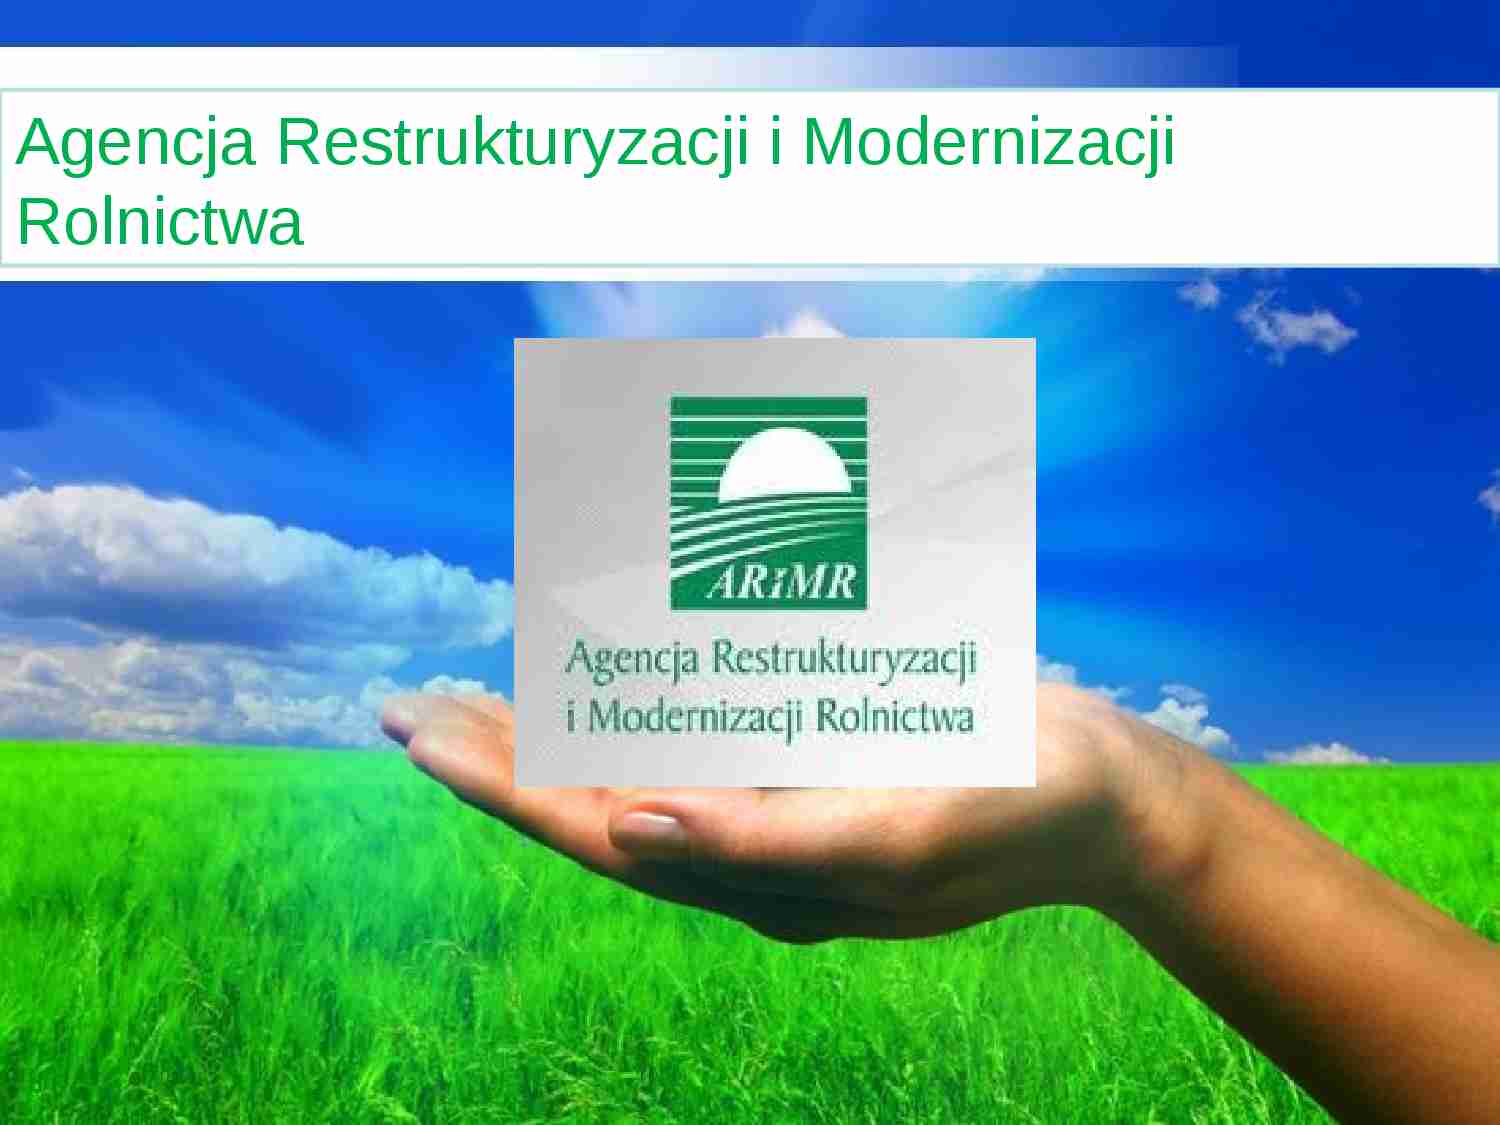 Agencja Restrukturyzacji i Modernizacji Rolnictwa 2 - prezentacja na politkę agralną - strona 1